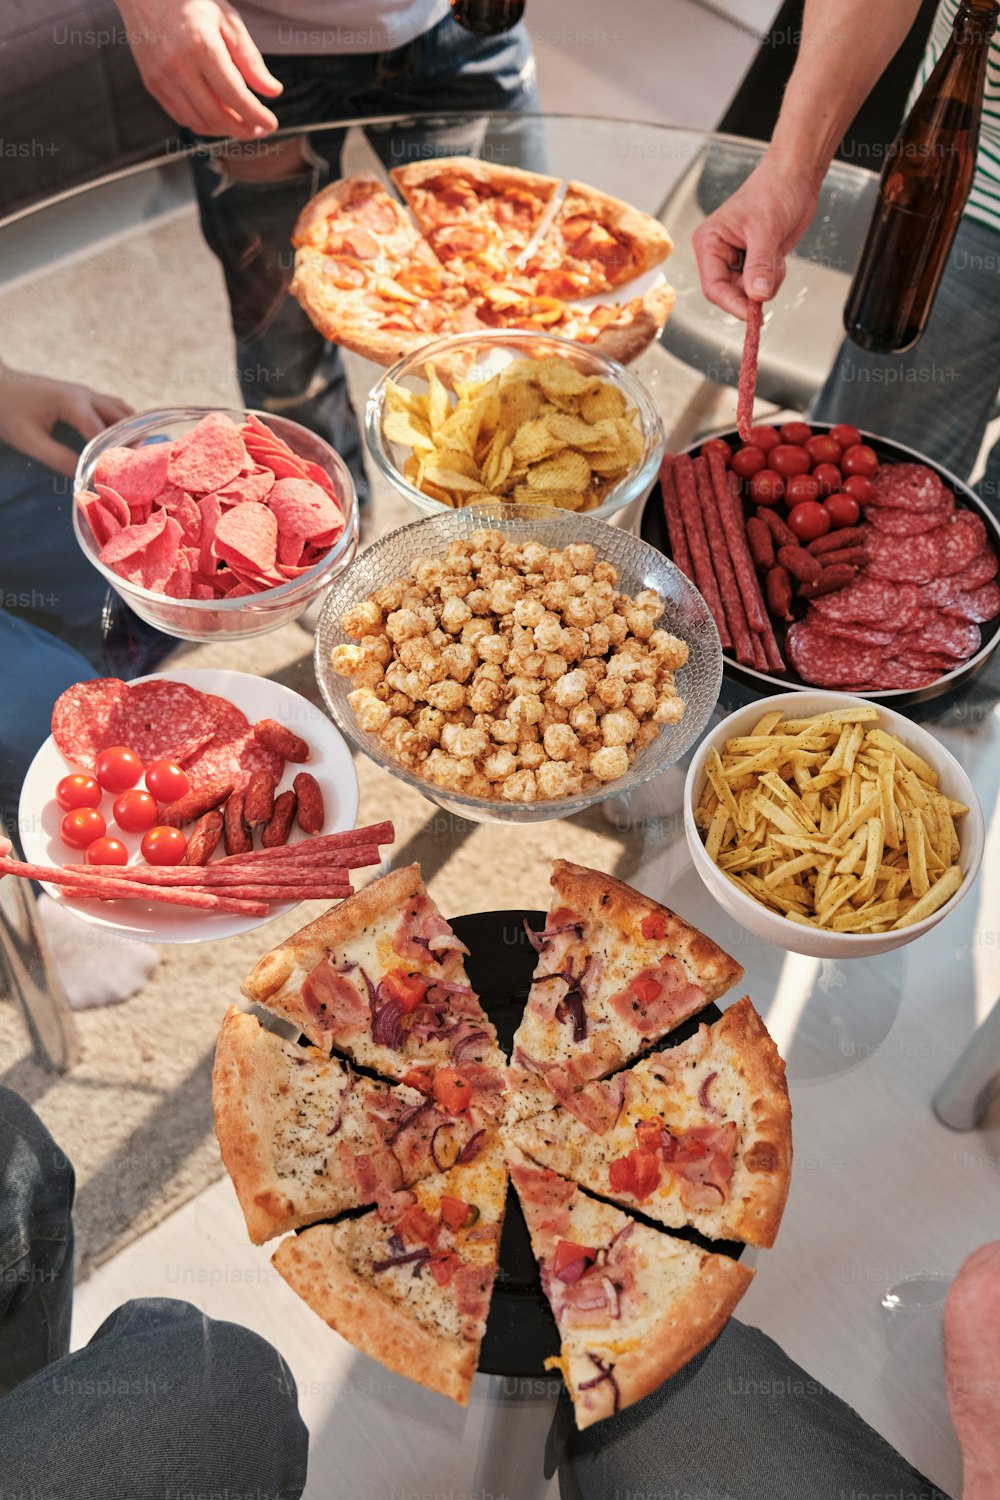 uma mesa coberta com muitos tipos diferentes de alimentos